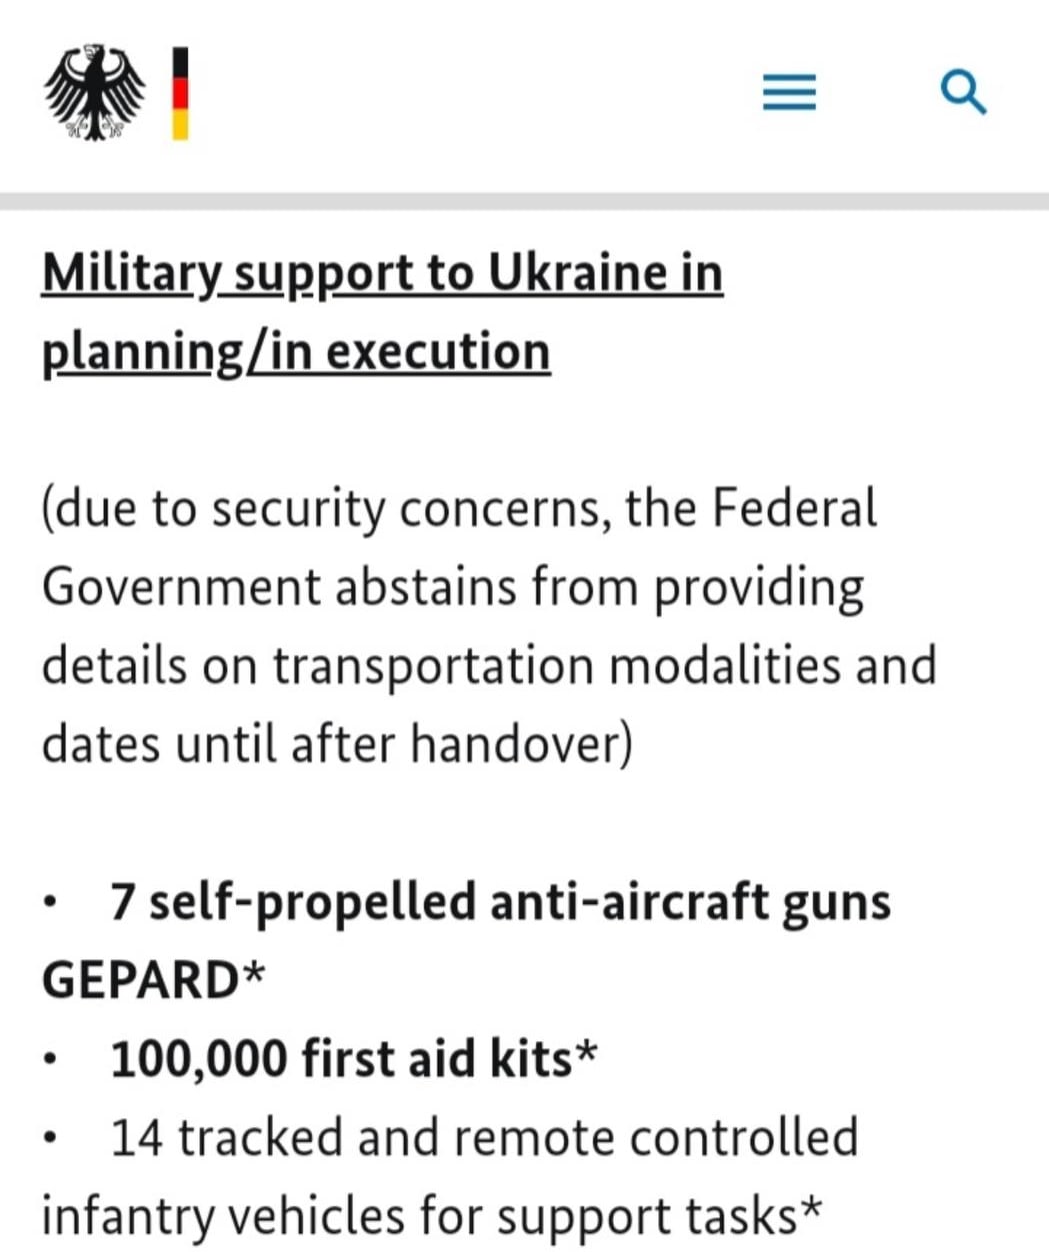 ⚡️Германия предоставляет Украине новый пакет помощи, - заявление на сайте правительства ФРГ